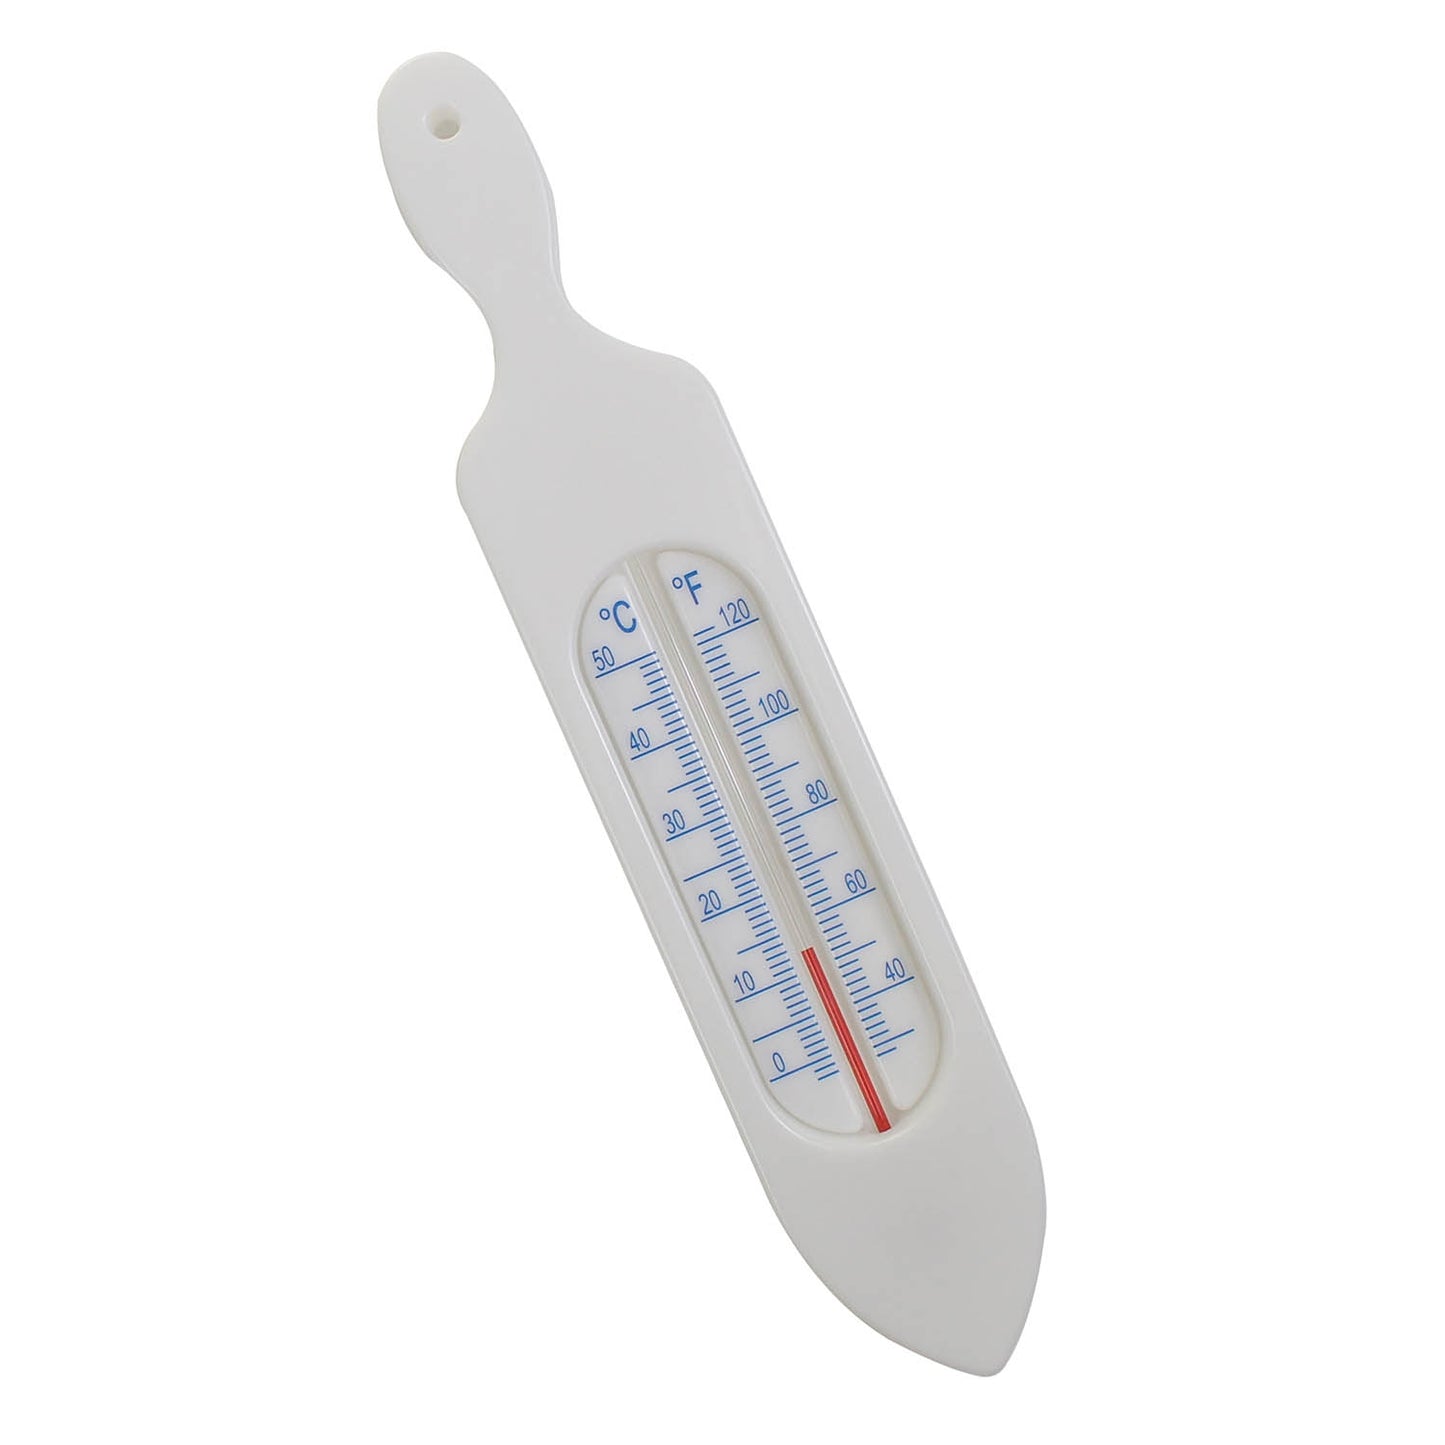 White Plastic Bath Thermometer